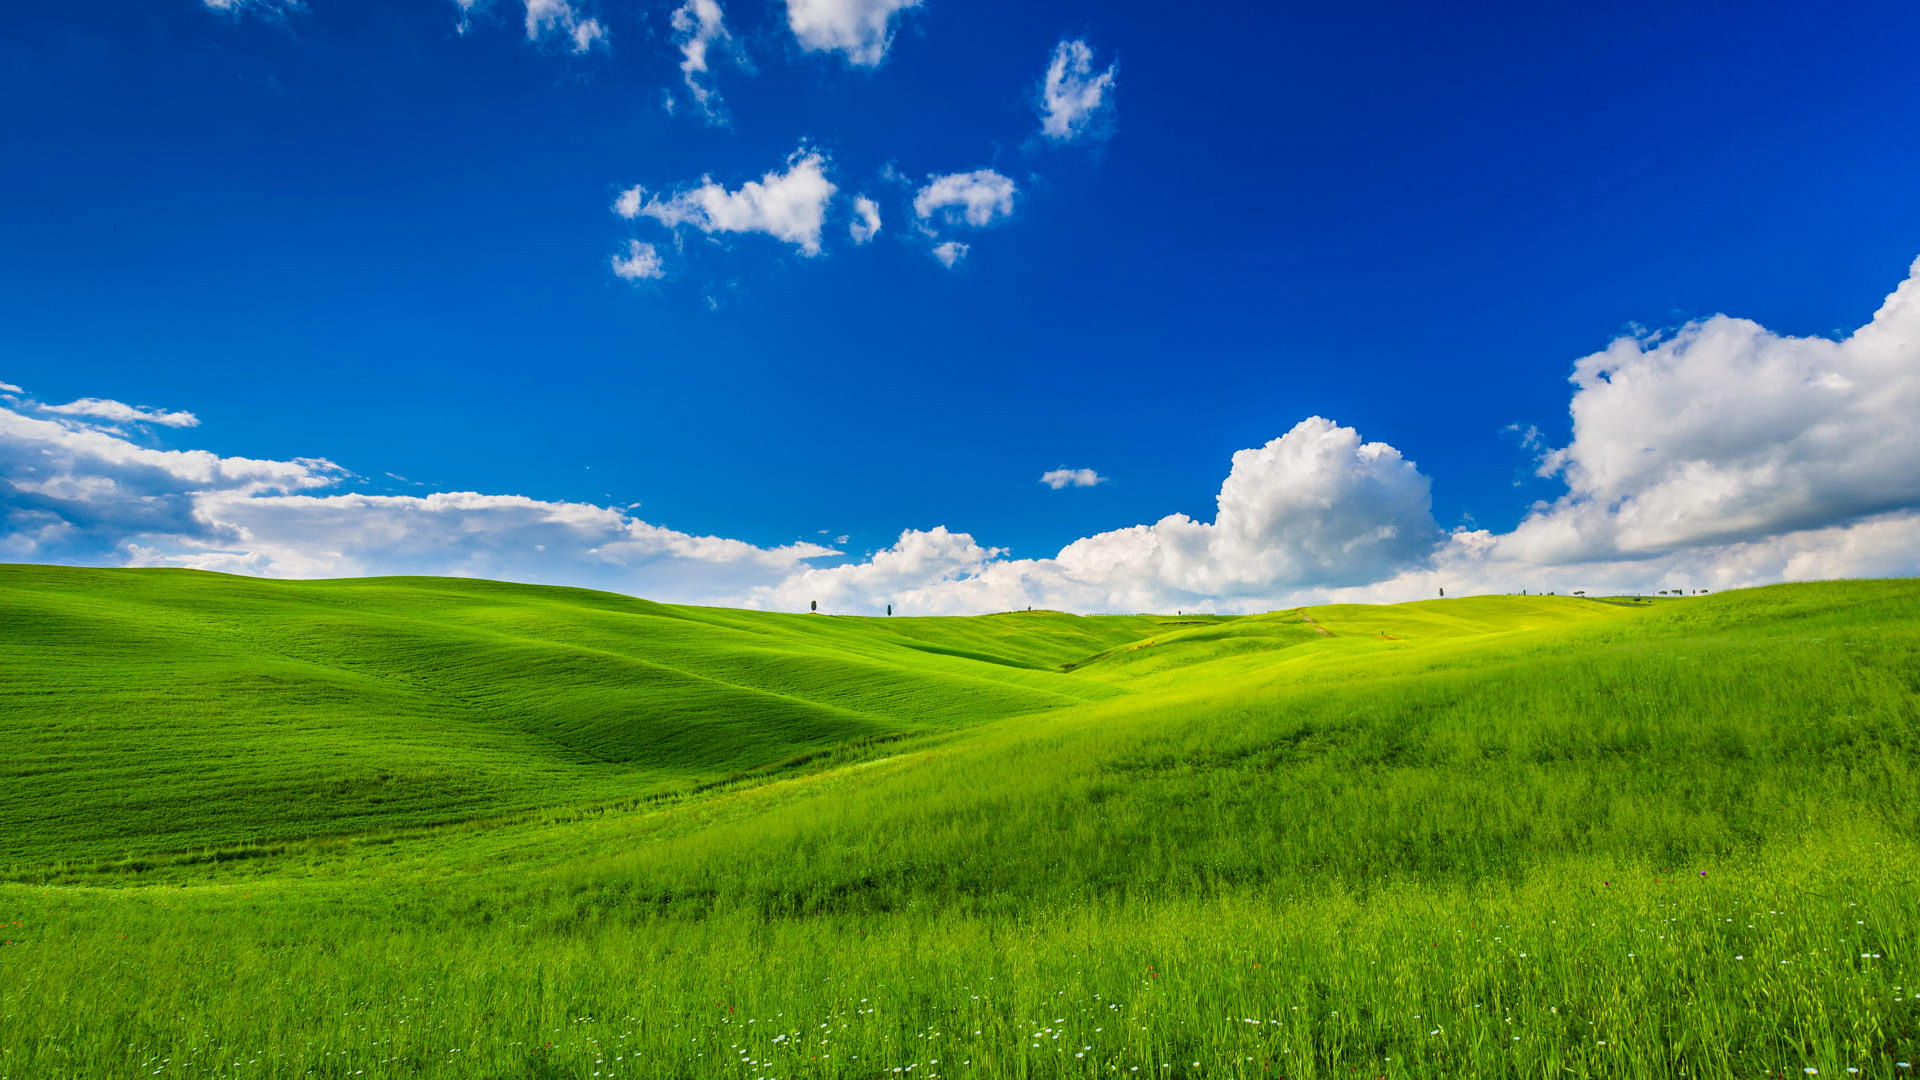 护眼,绿色,一望无际,晴朗,蓝天白云,草原,风光桌面壁纸